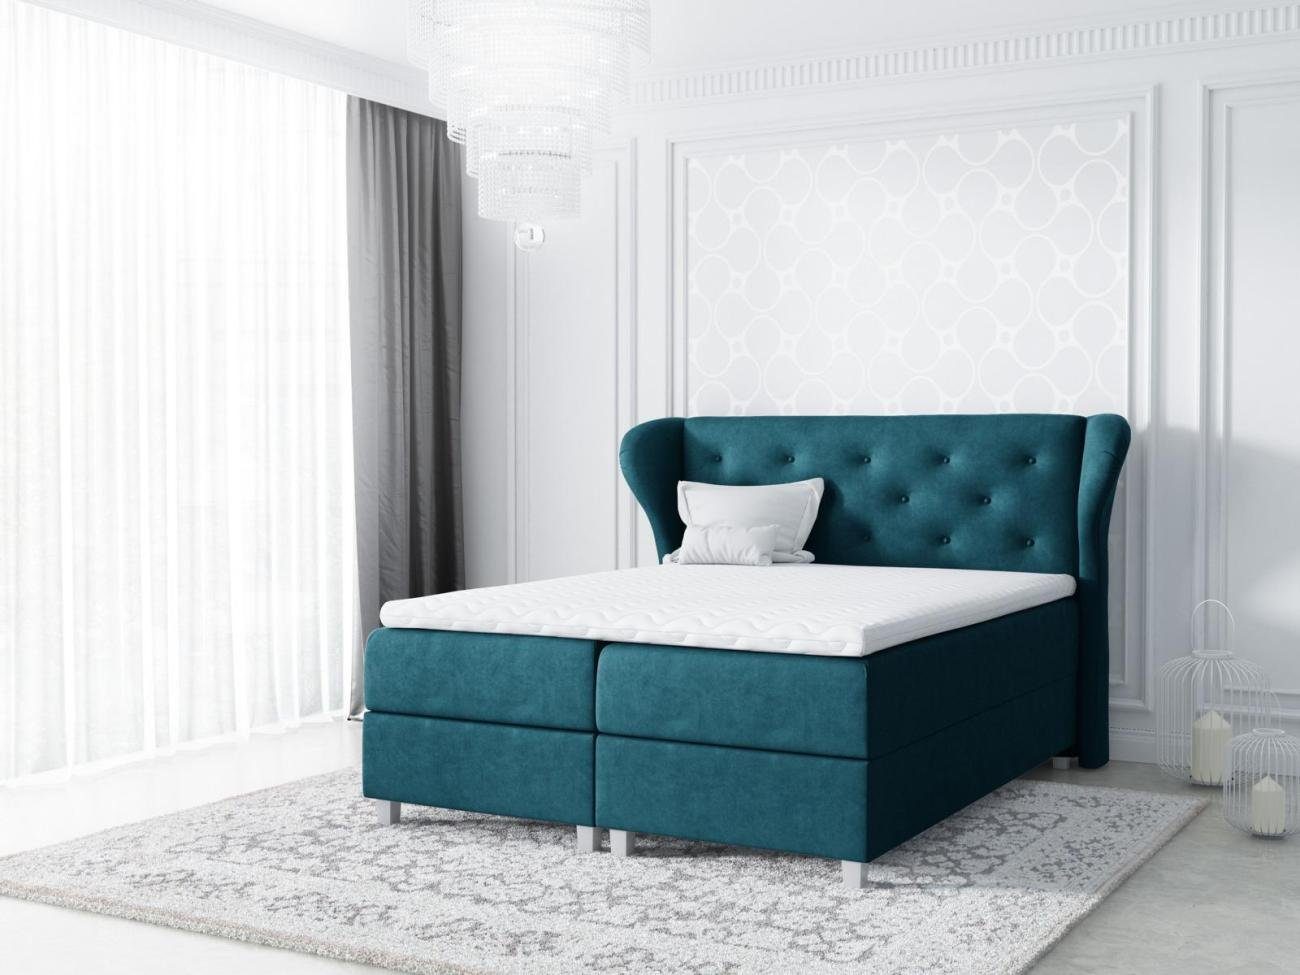 Textil Design Grün Modern Bett, Hotel Stoff Boxspringbett JVmoebel Bett Doppel